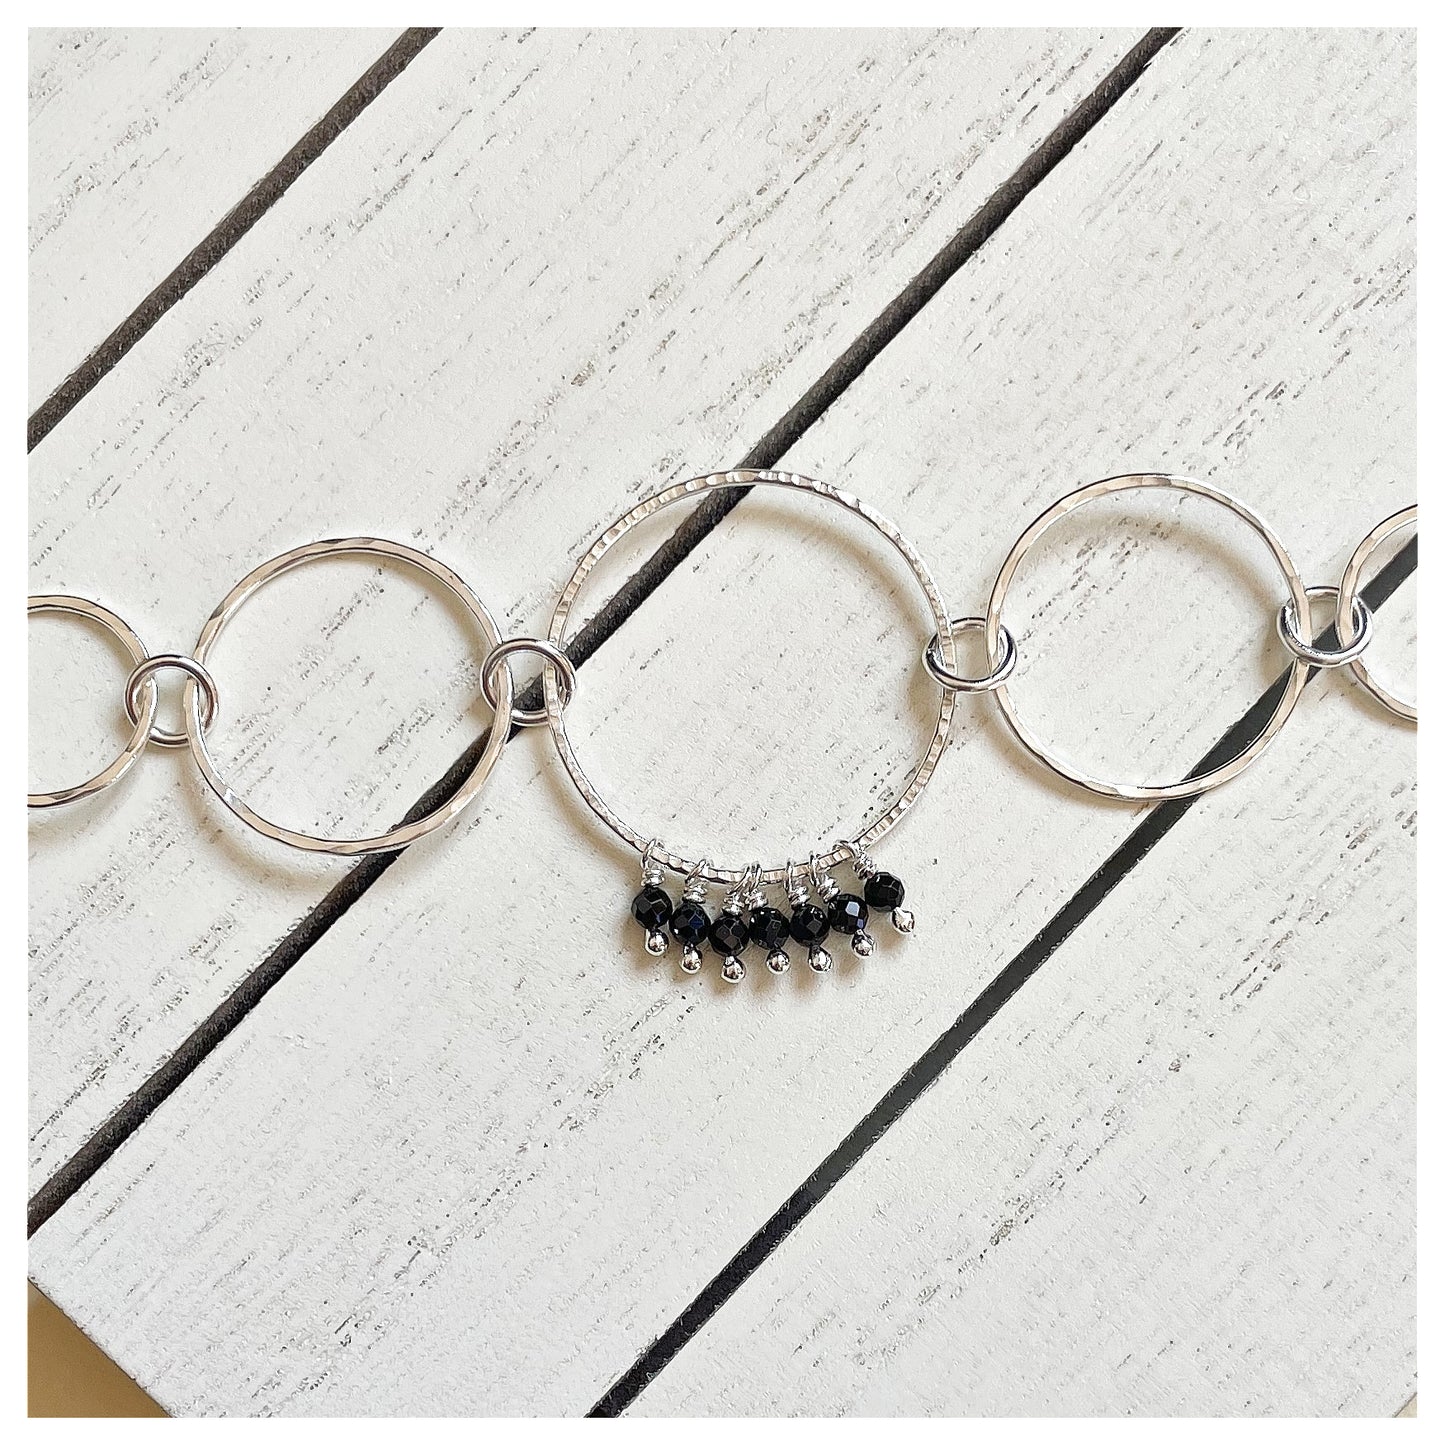 Sterling Silver and Black Spinel Handmade Circular Link Bracelet